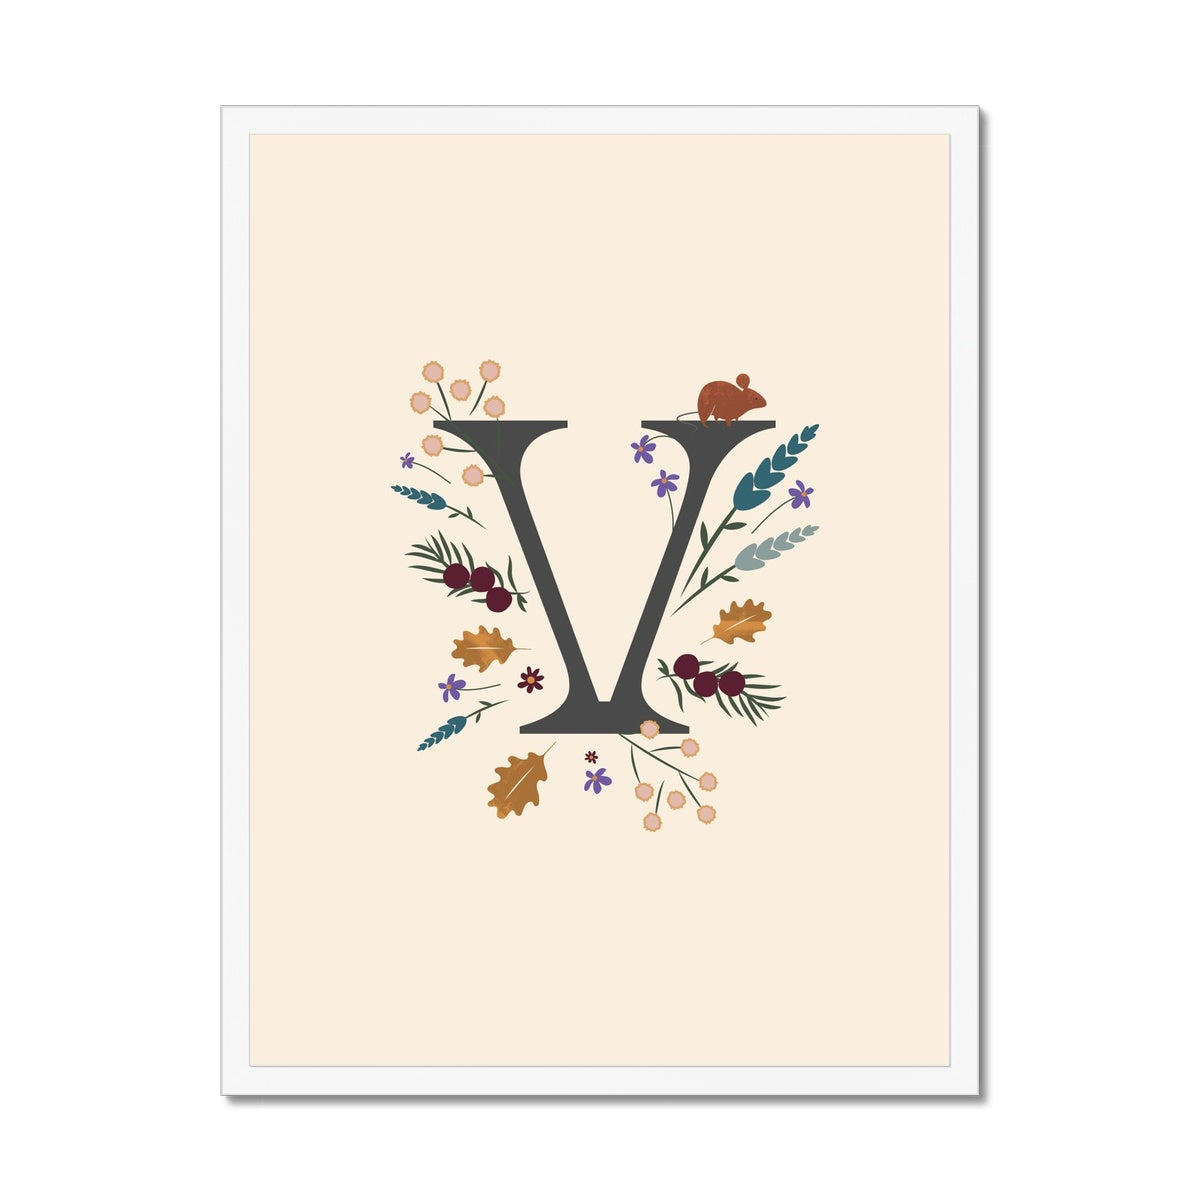 Initial Letter 'V' Woodlands Framed Fine Art Print